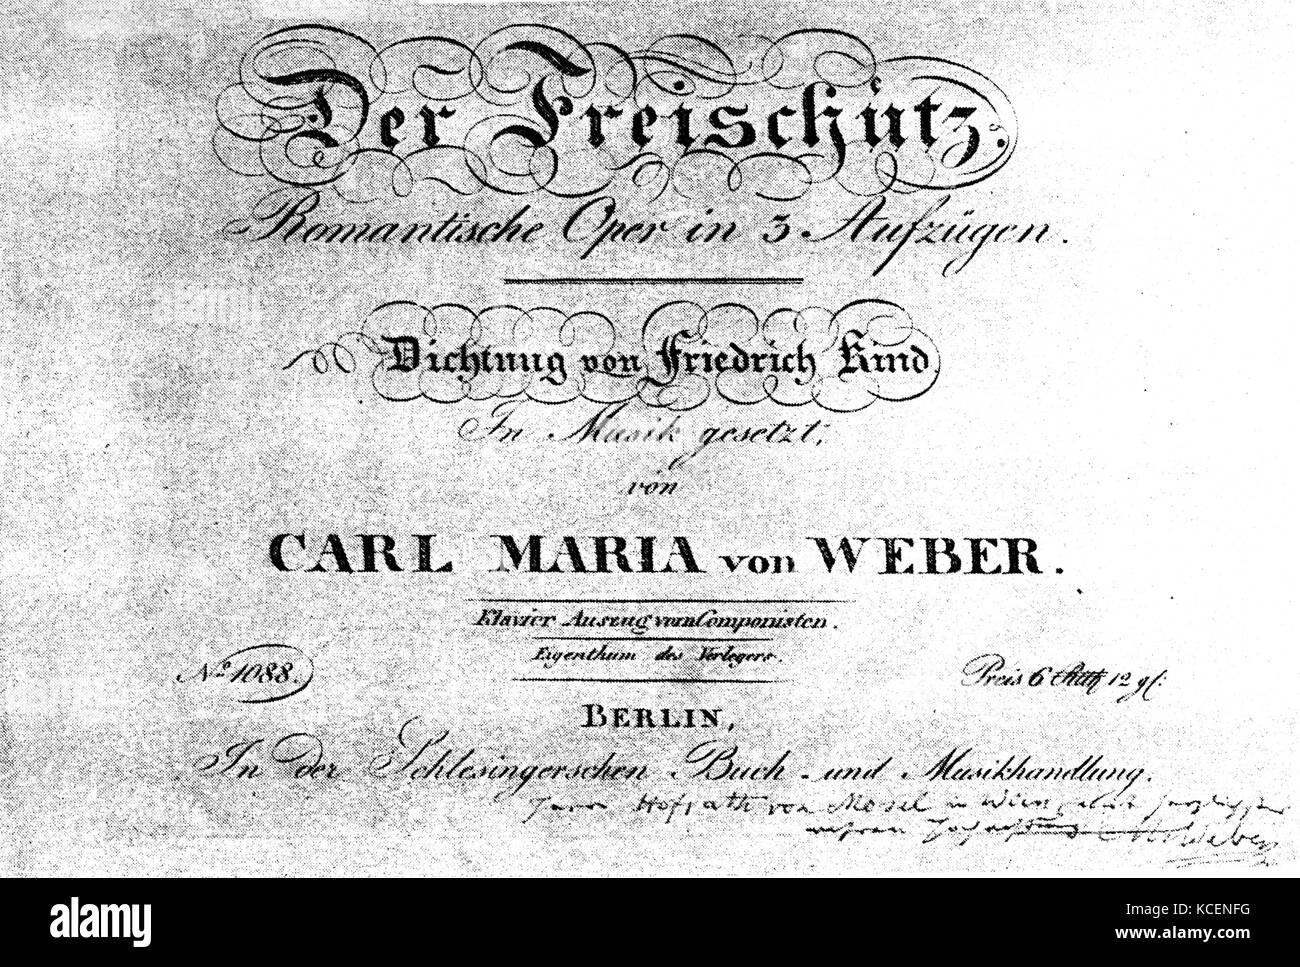 Pagina del titolo dell'Opera Tedesca 'Der Freischütz" (il tiratore libero) da Carl Maria von Weber (1786-1826) un compositore tedesco, conduttore, pianista, chitarrista, e critico. Datata del XIX secolo Foto Stock